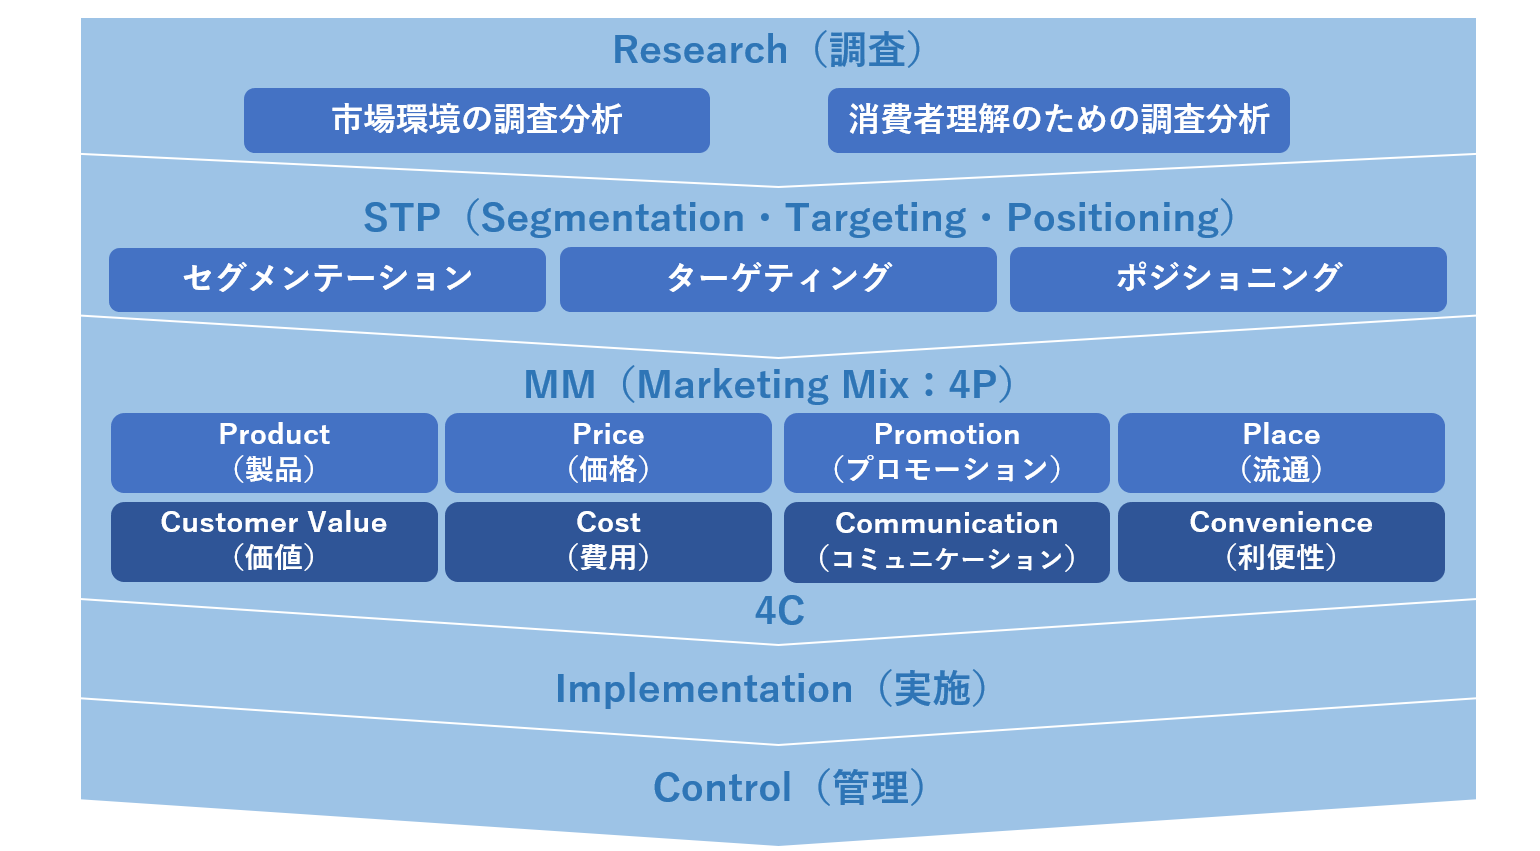 コトラー提唱のマーケティングプロセス図解